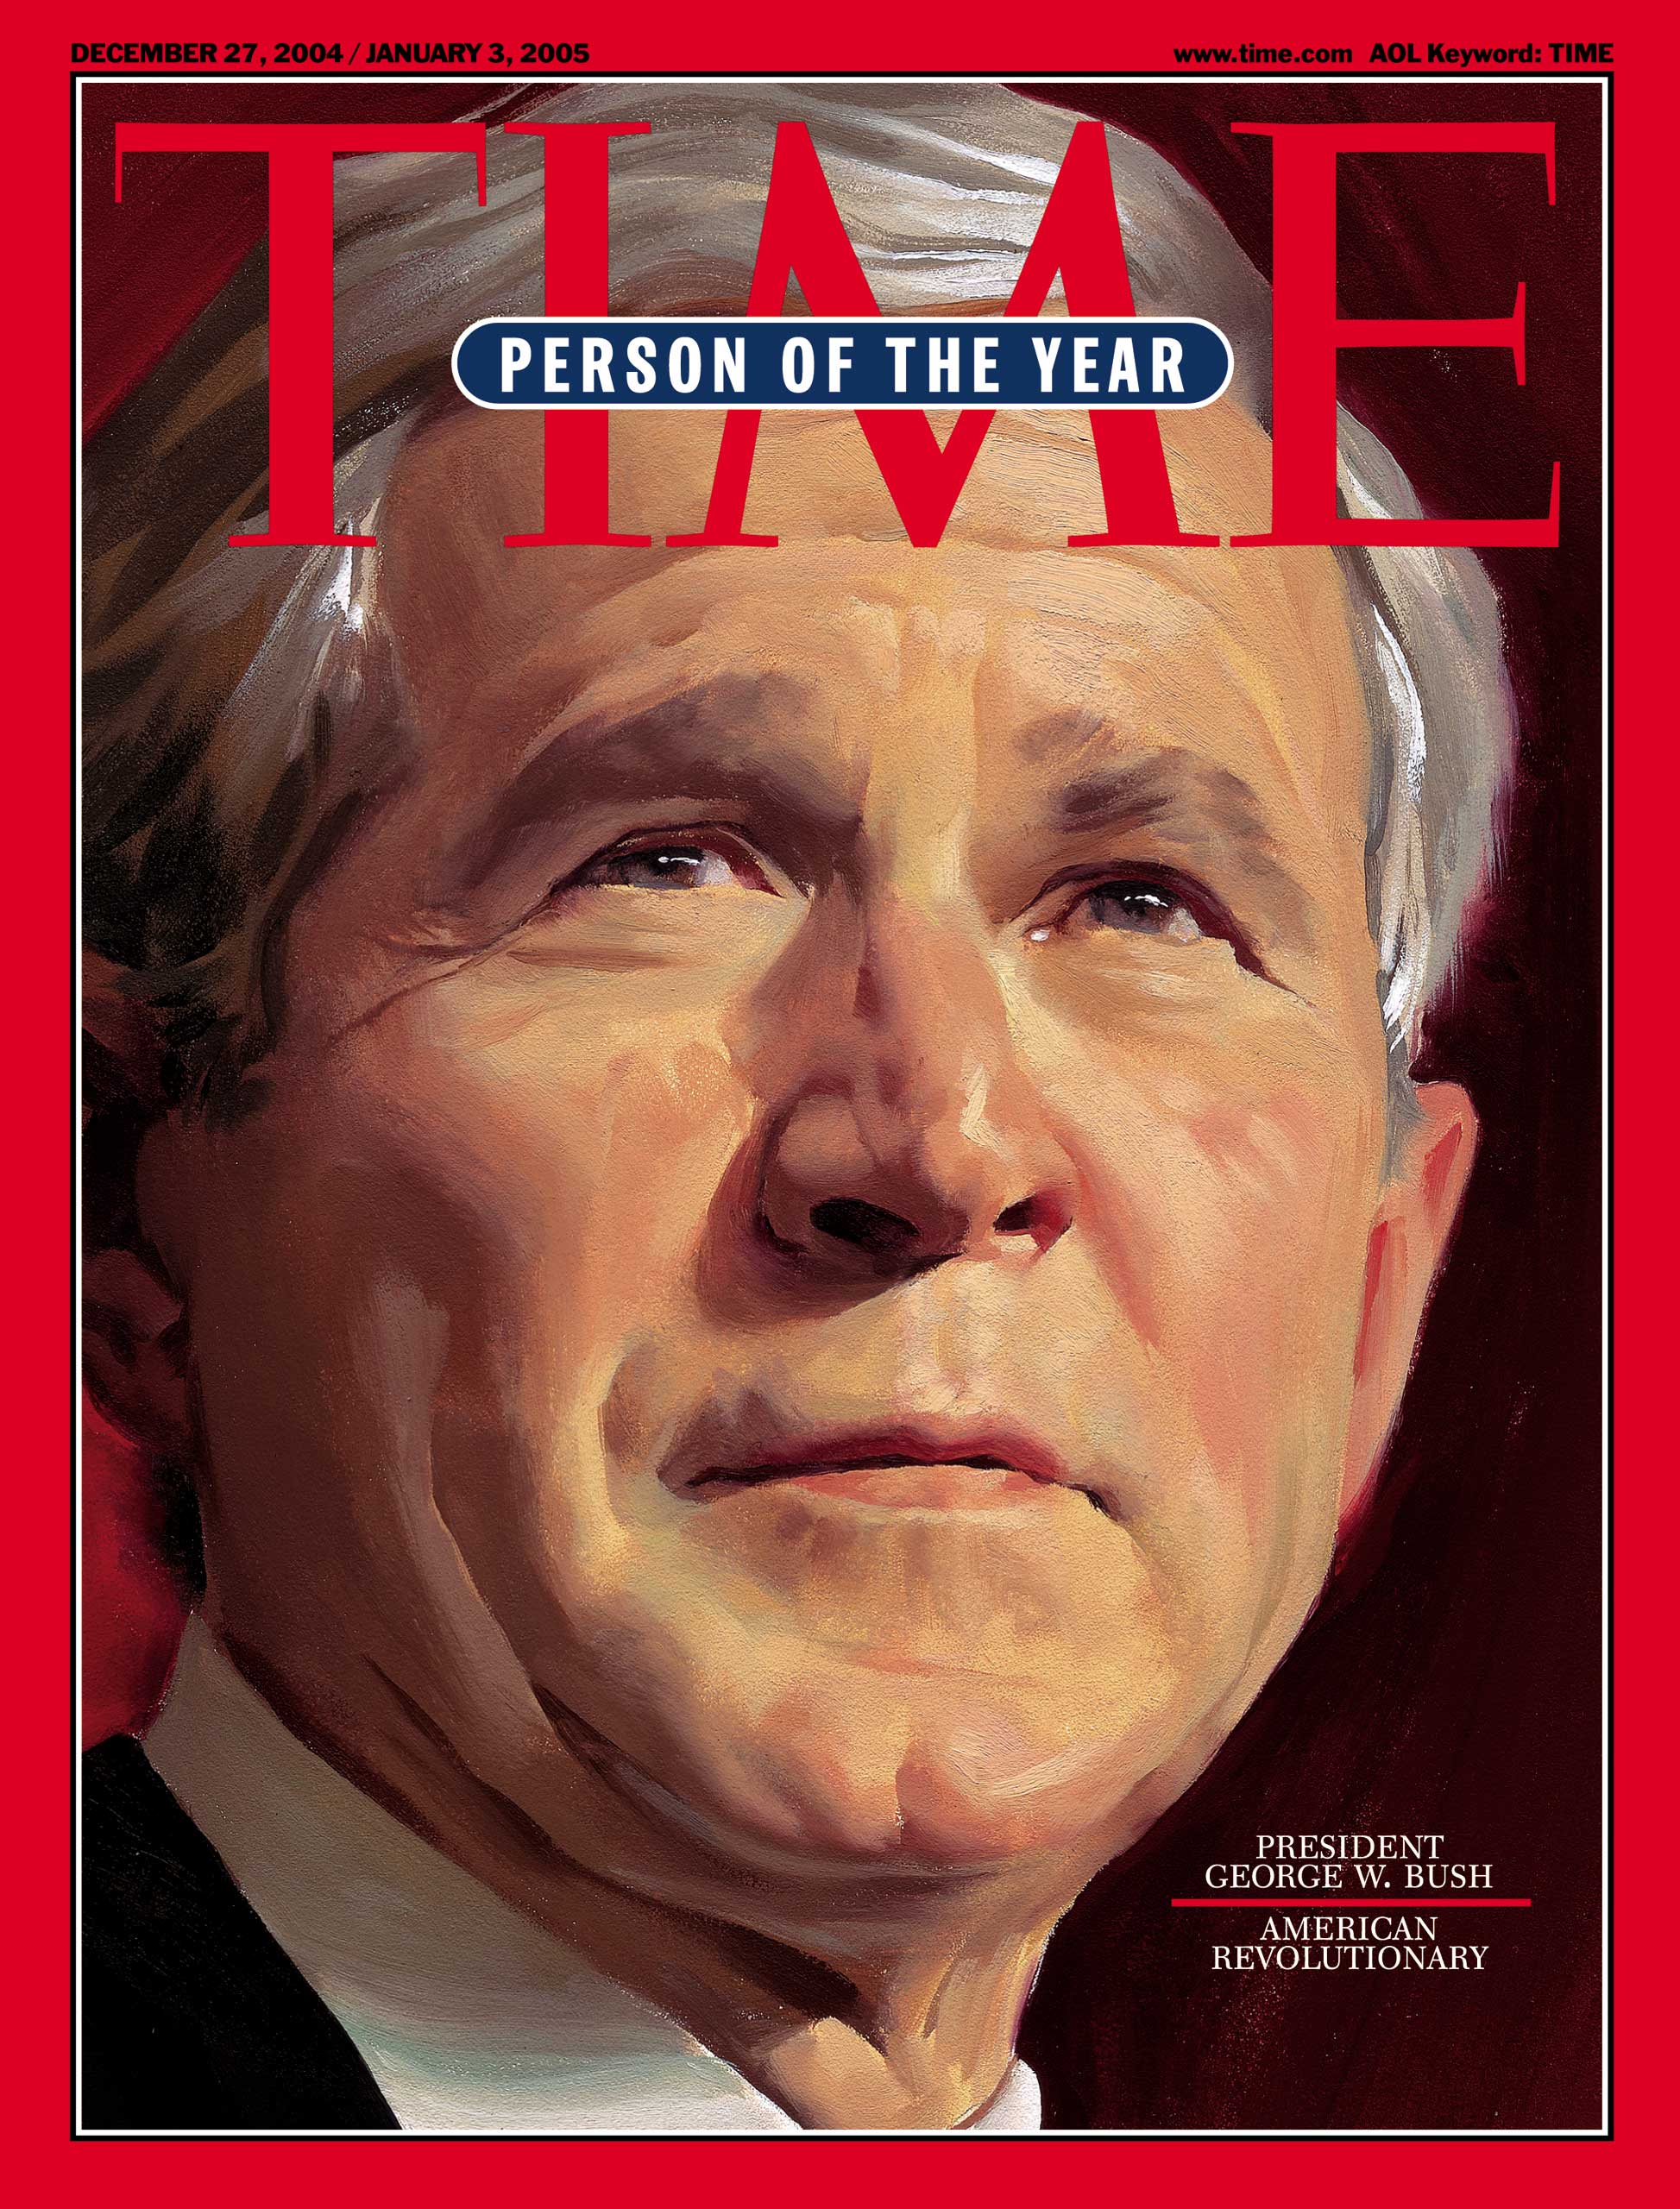 2004: President George W. Bush